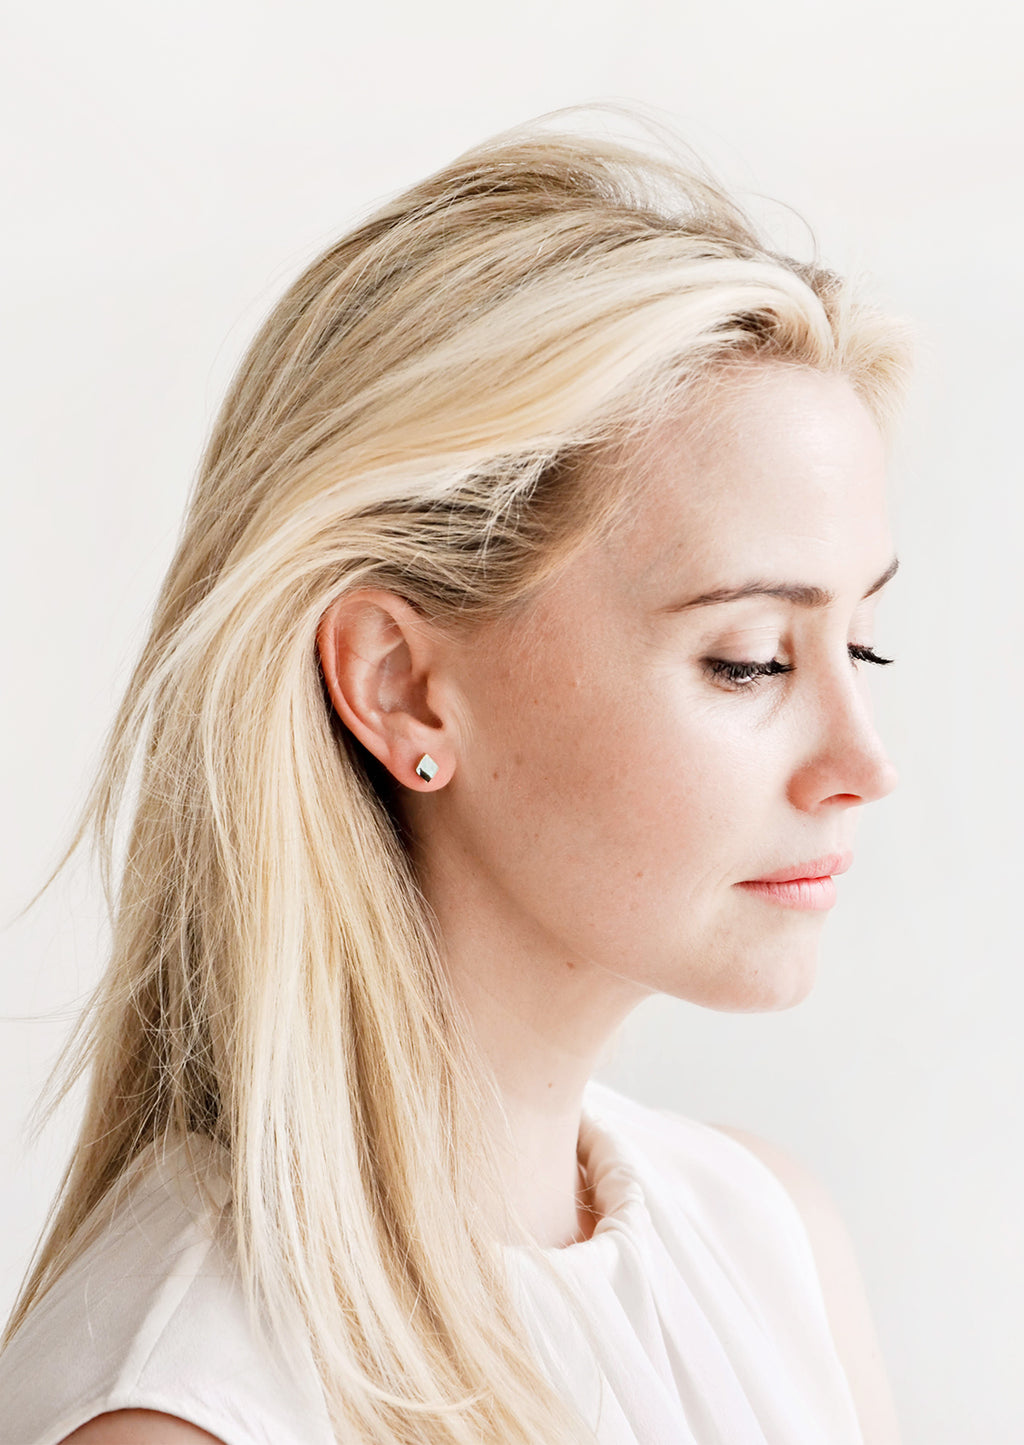 2: Blonde model wearing diamond shaped stud earrings.